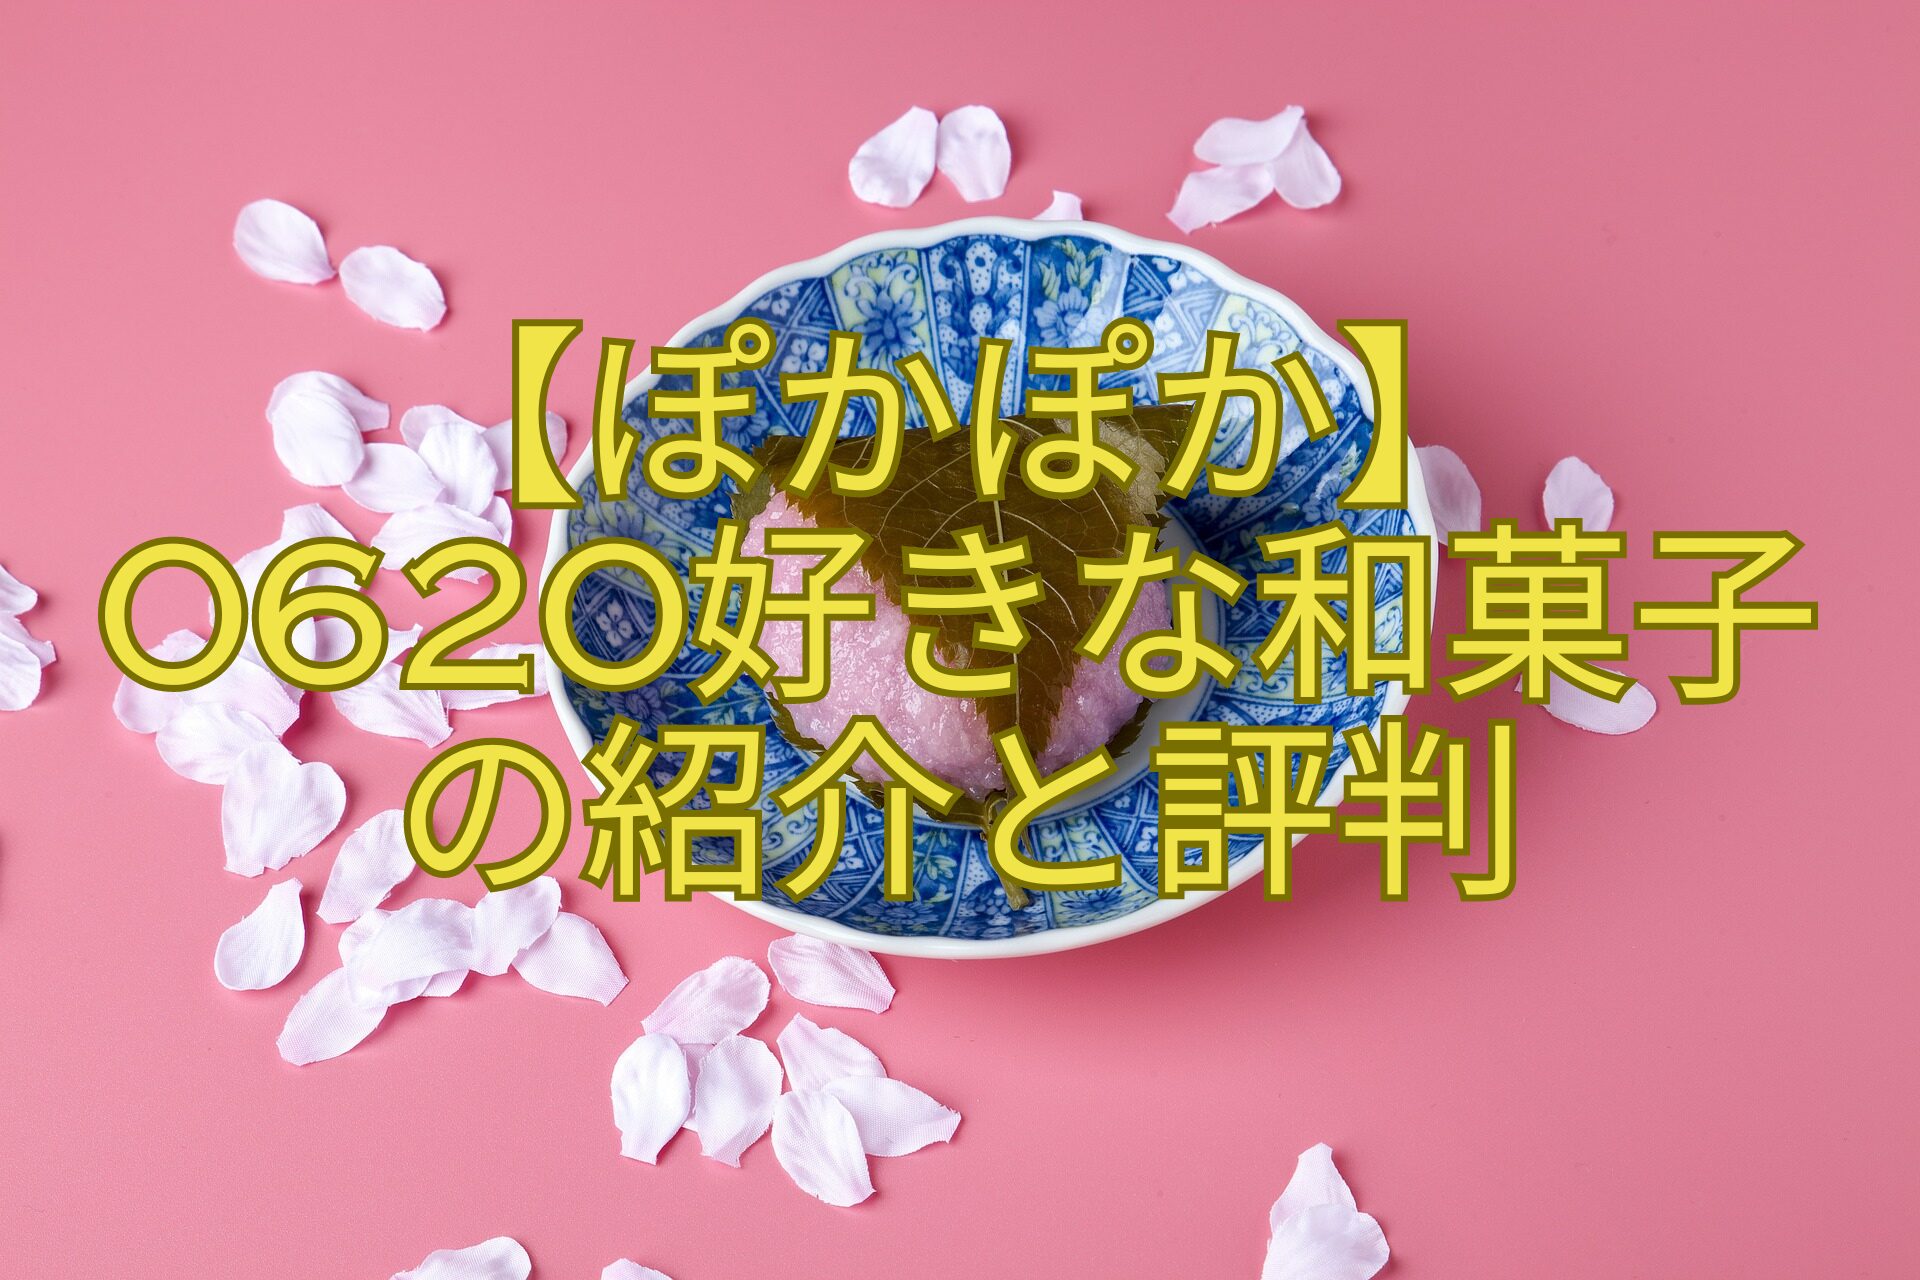 【ぽかぽか】0620好きな和菓子-の紹介と評判